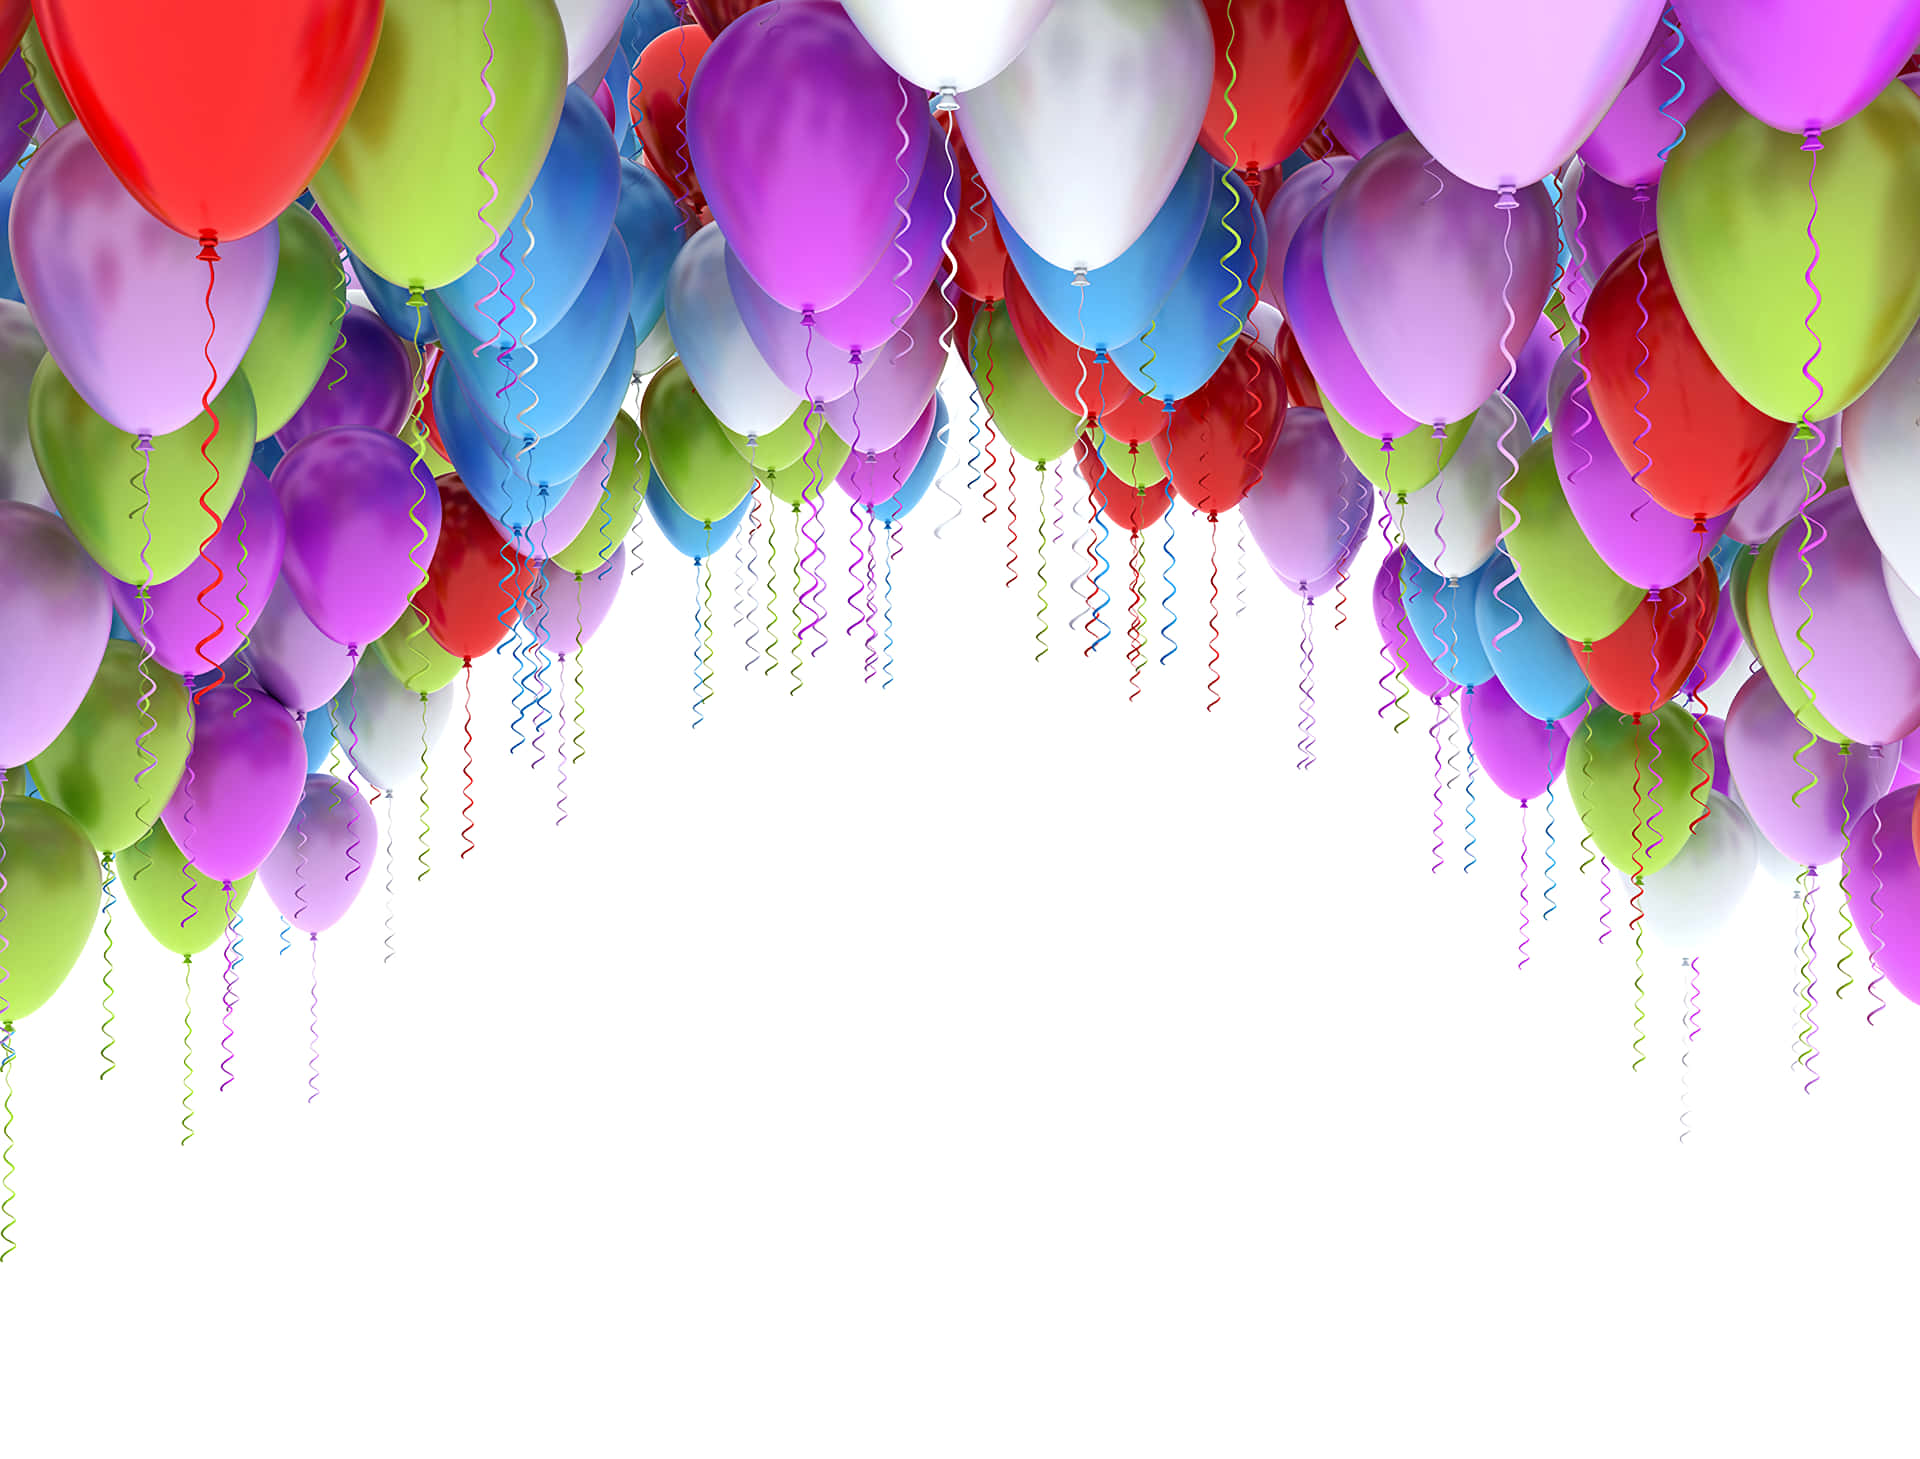 Fødselsdagsballoner svæver på toppen af billedtapet.